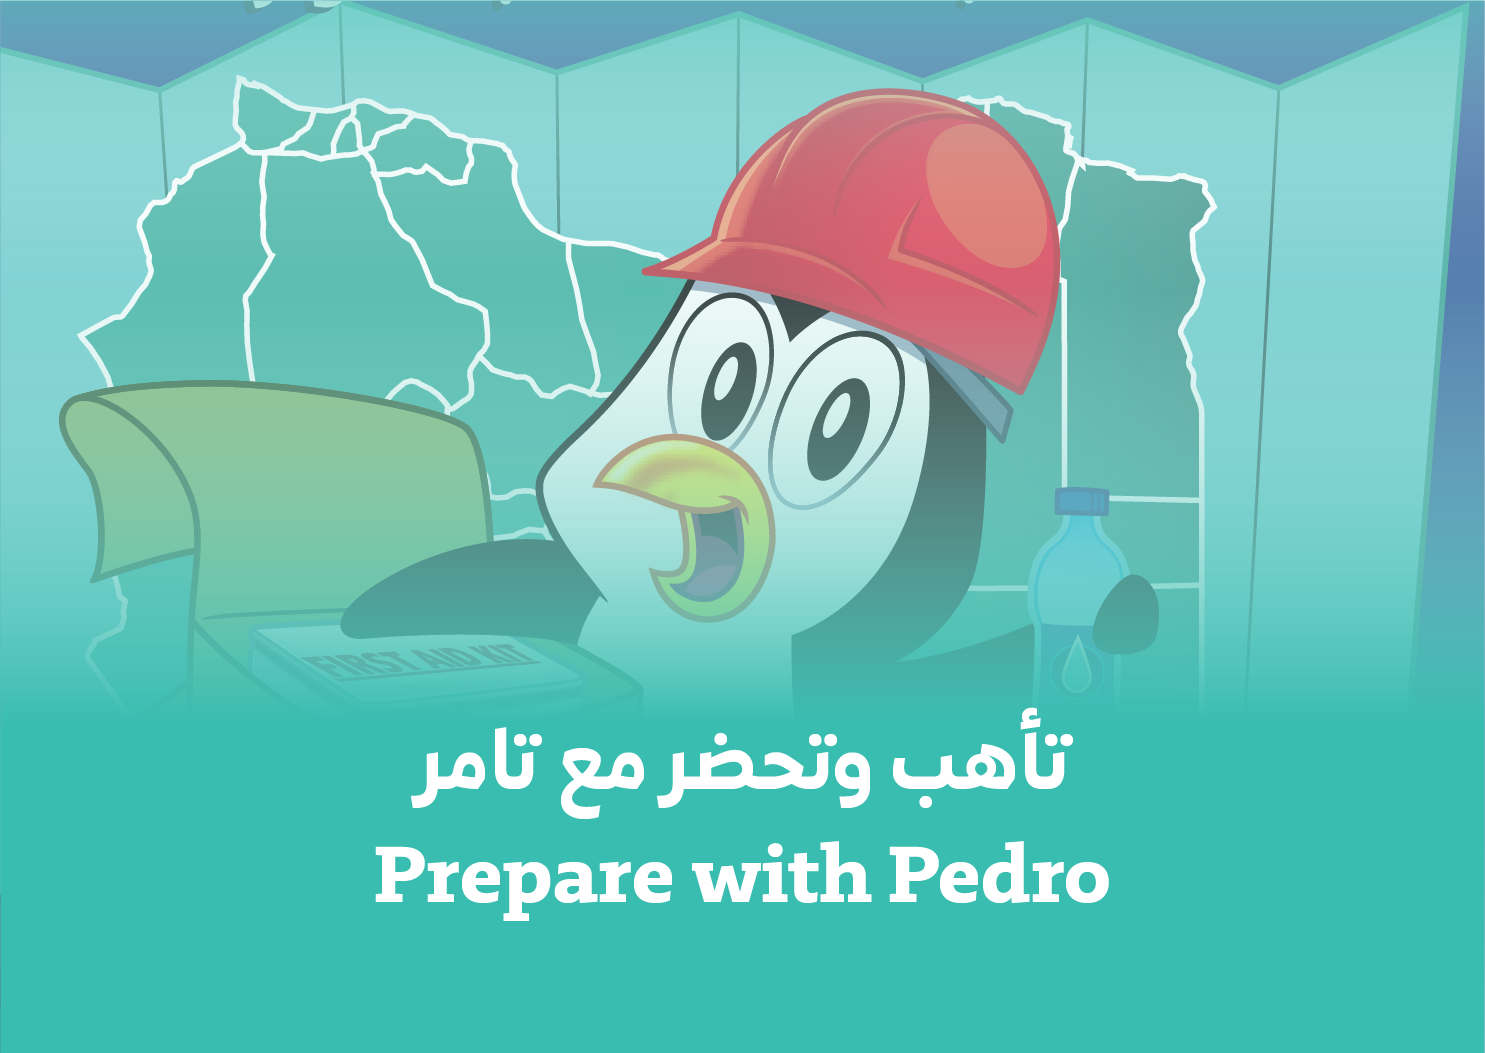 Prepare with Pedro